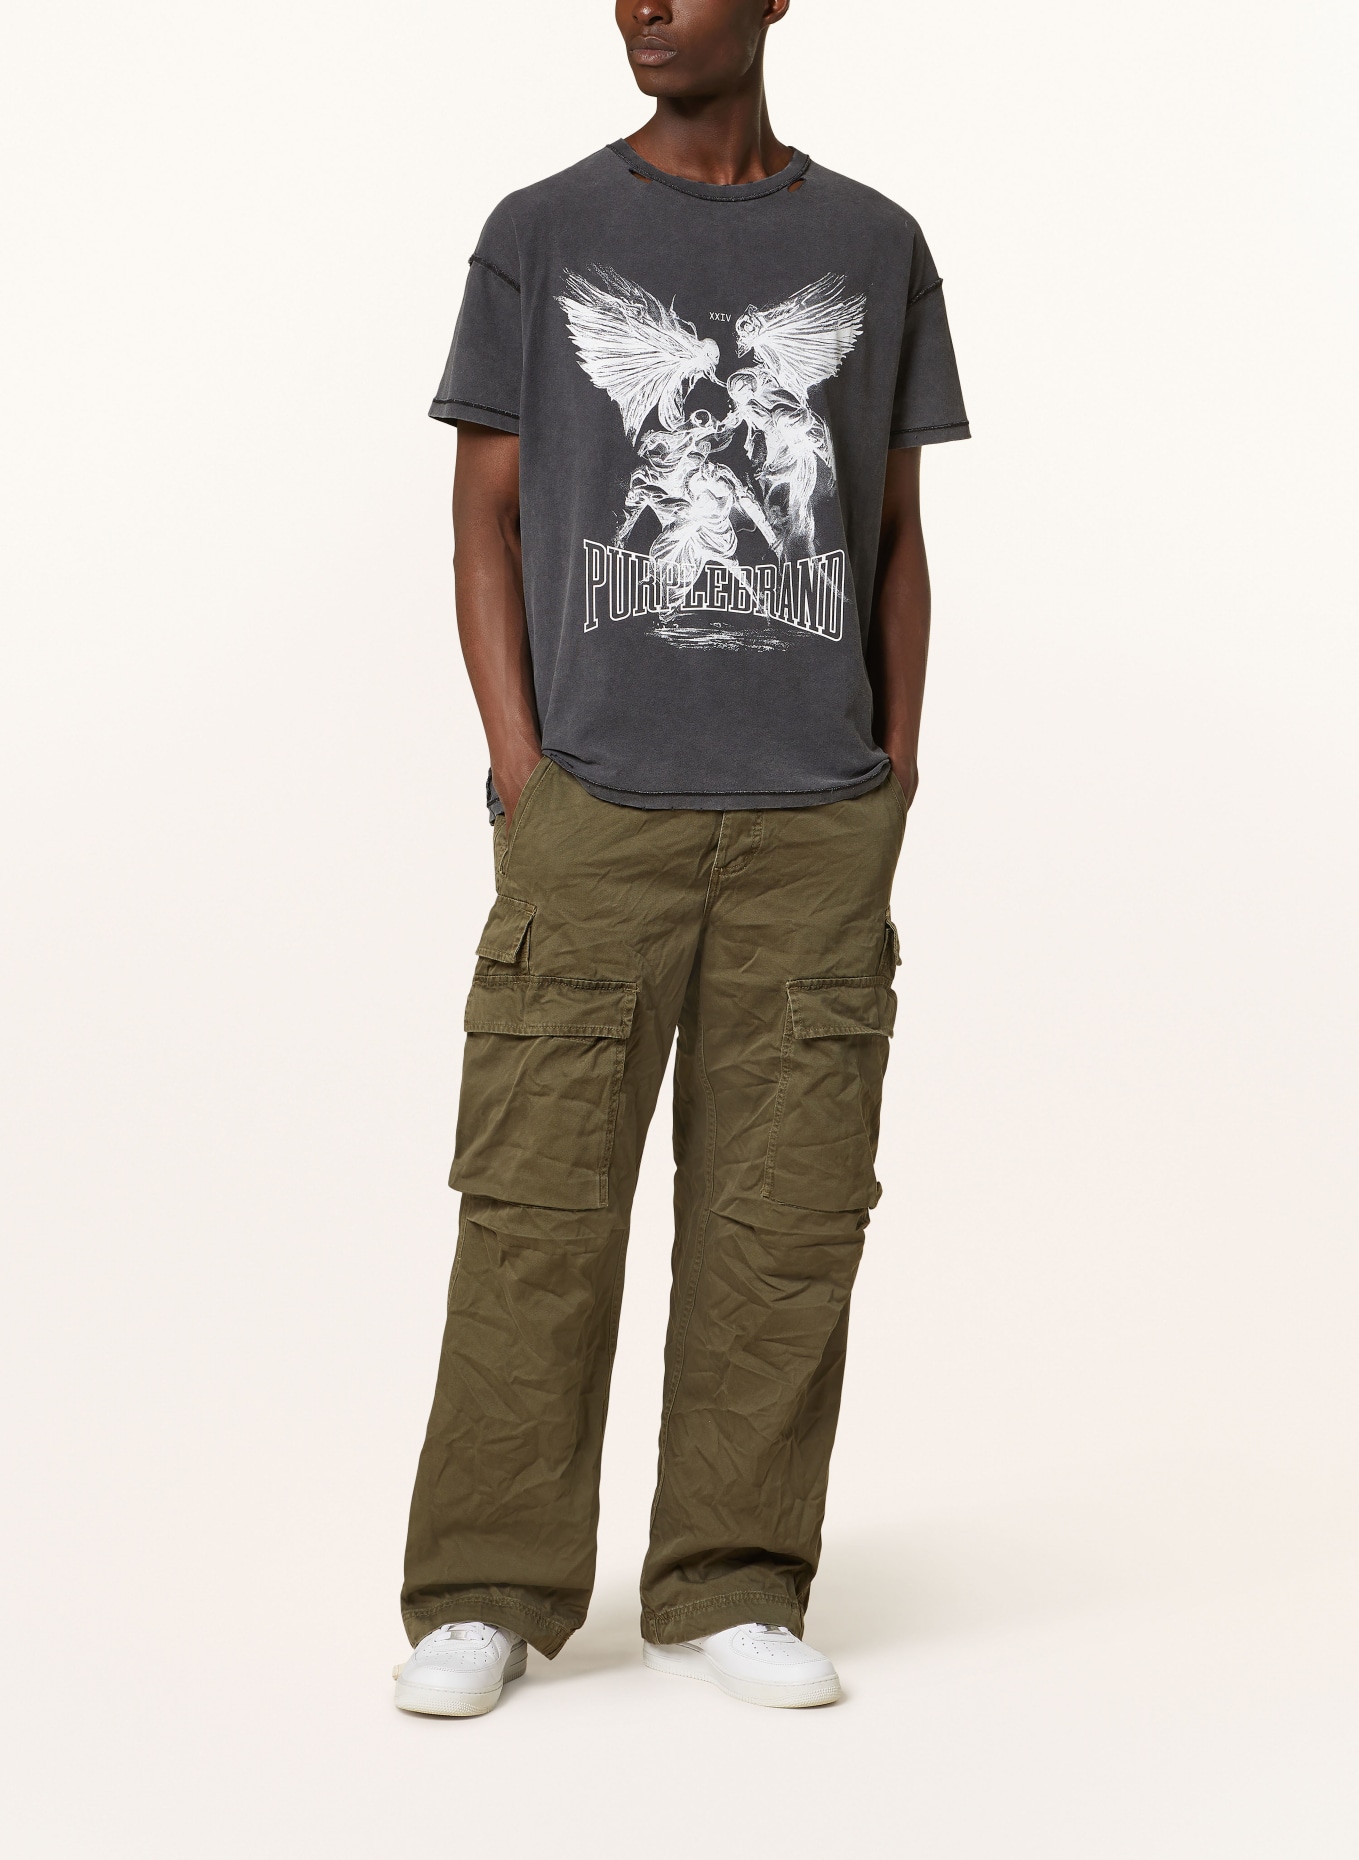 PURPLE BRAND T-shirt, Color: BLACK (Image 2)